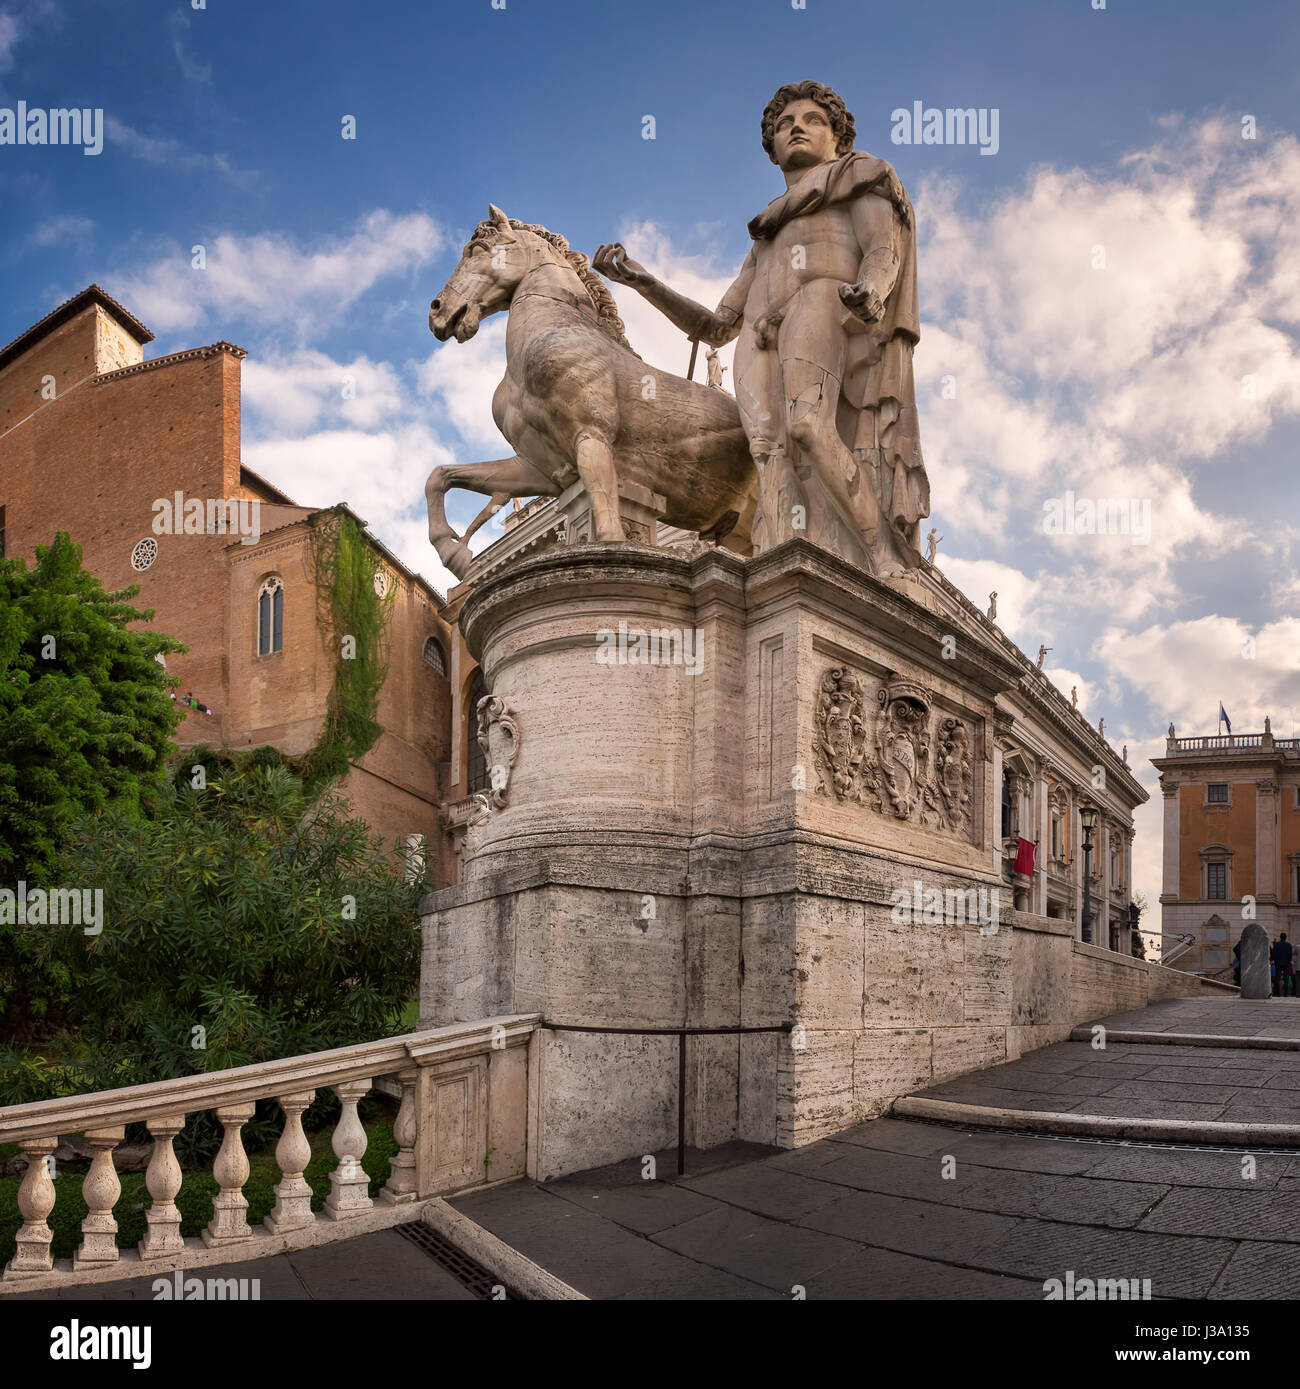 Statua di Castor al Cordonata scale per la Piazza del Campidoglio a Piazza del Campidoglio, Roma, Italia Foto Stock